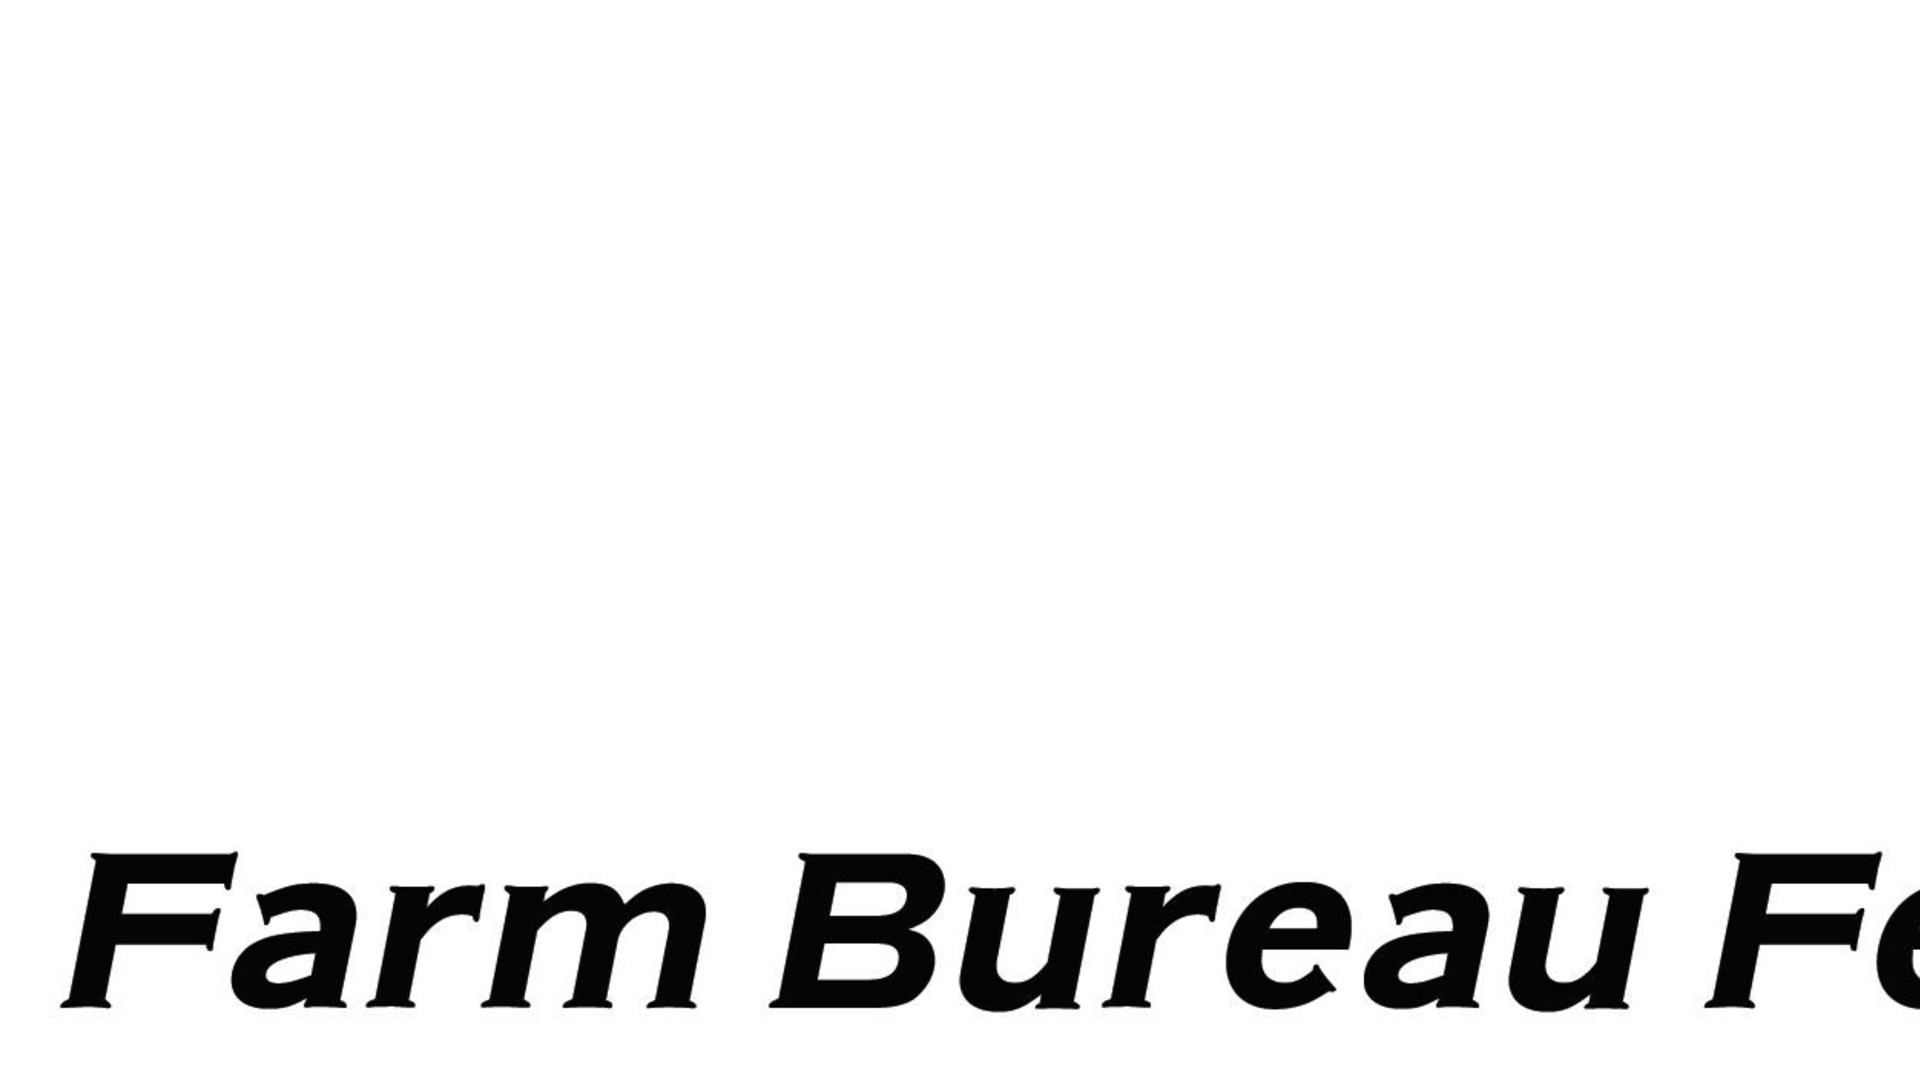 American Farm Bureau Federation on Trade Pt 2